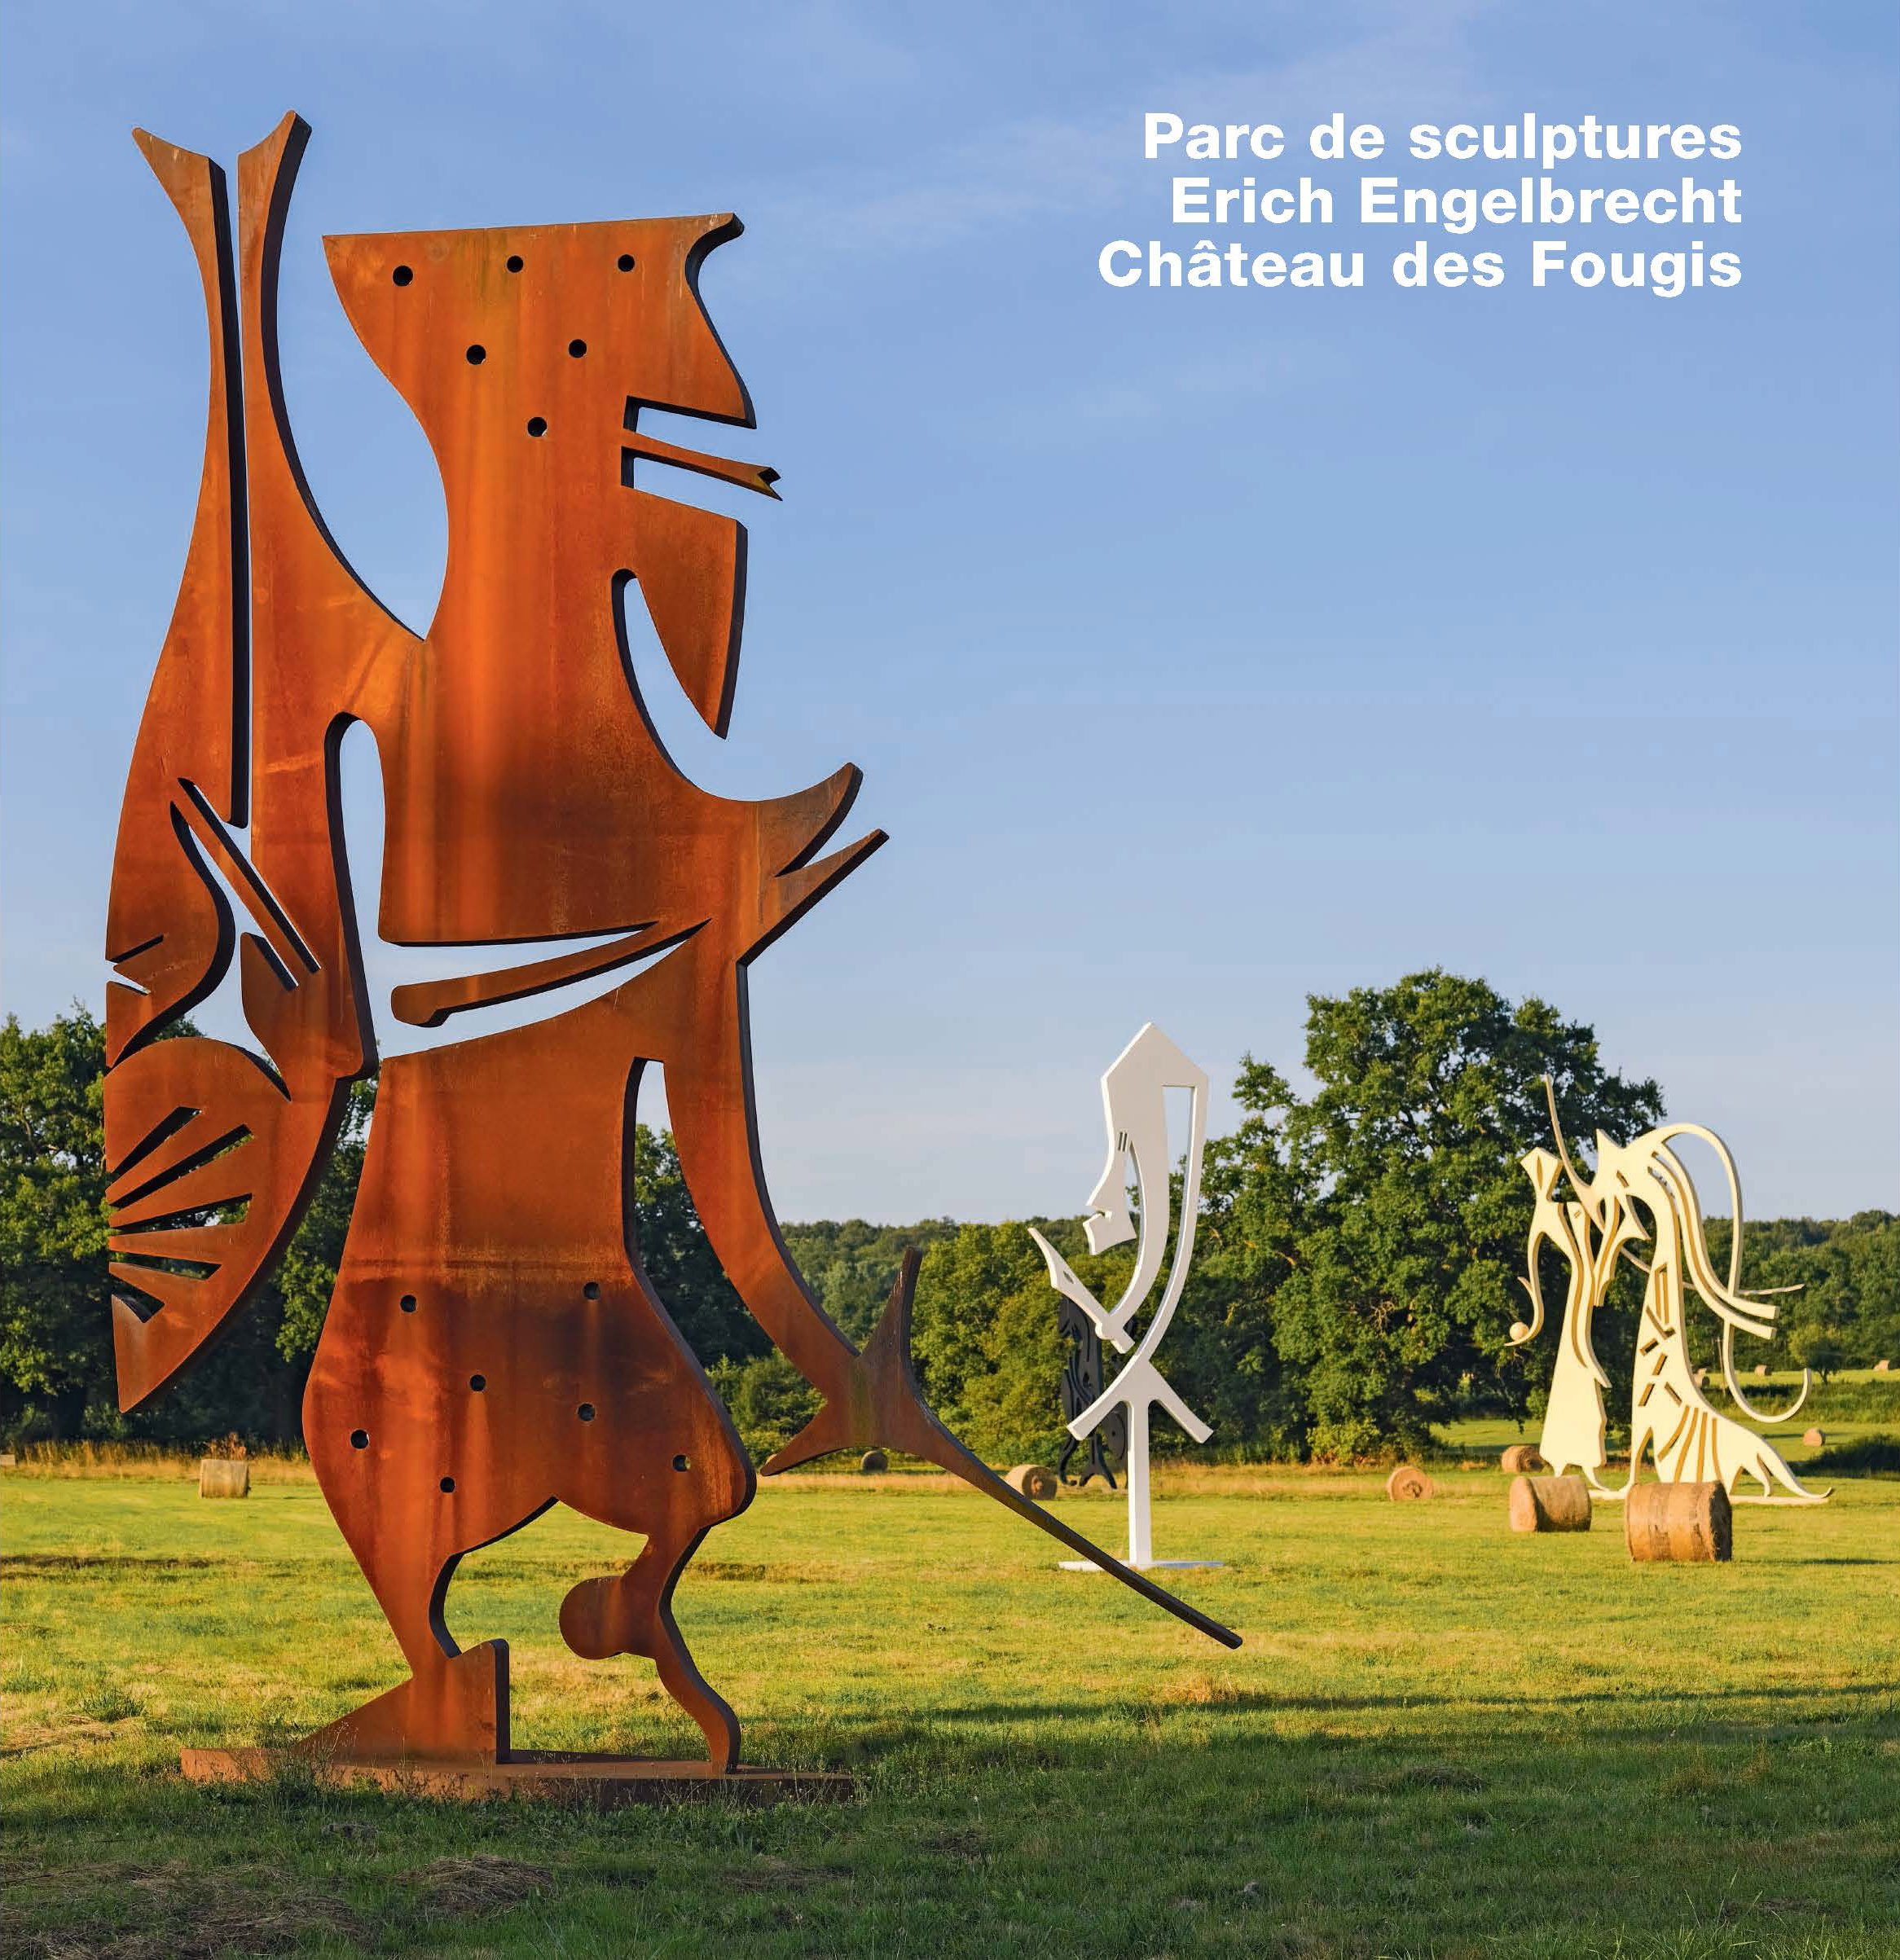 Erich Engelbrecht, Catalogue Parc de sculptures, Chateau des Fougis